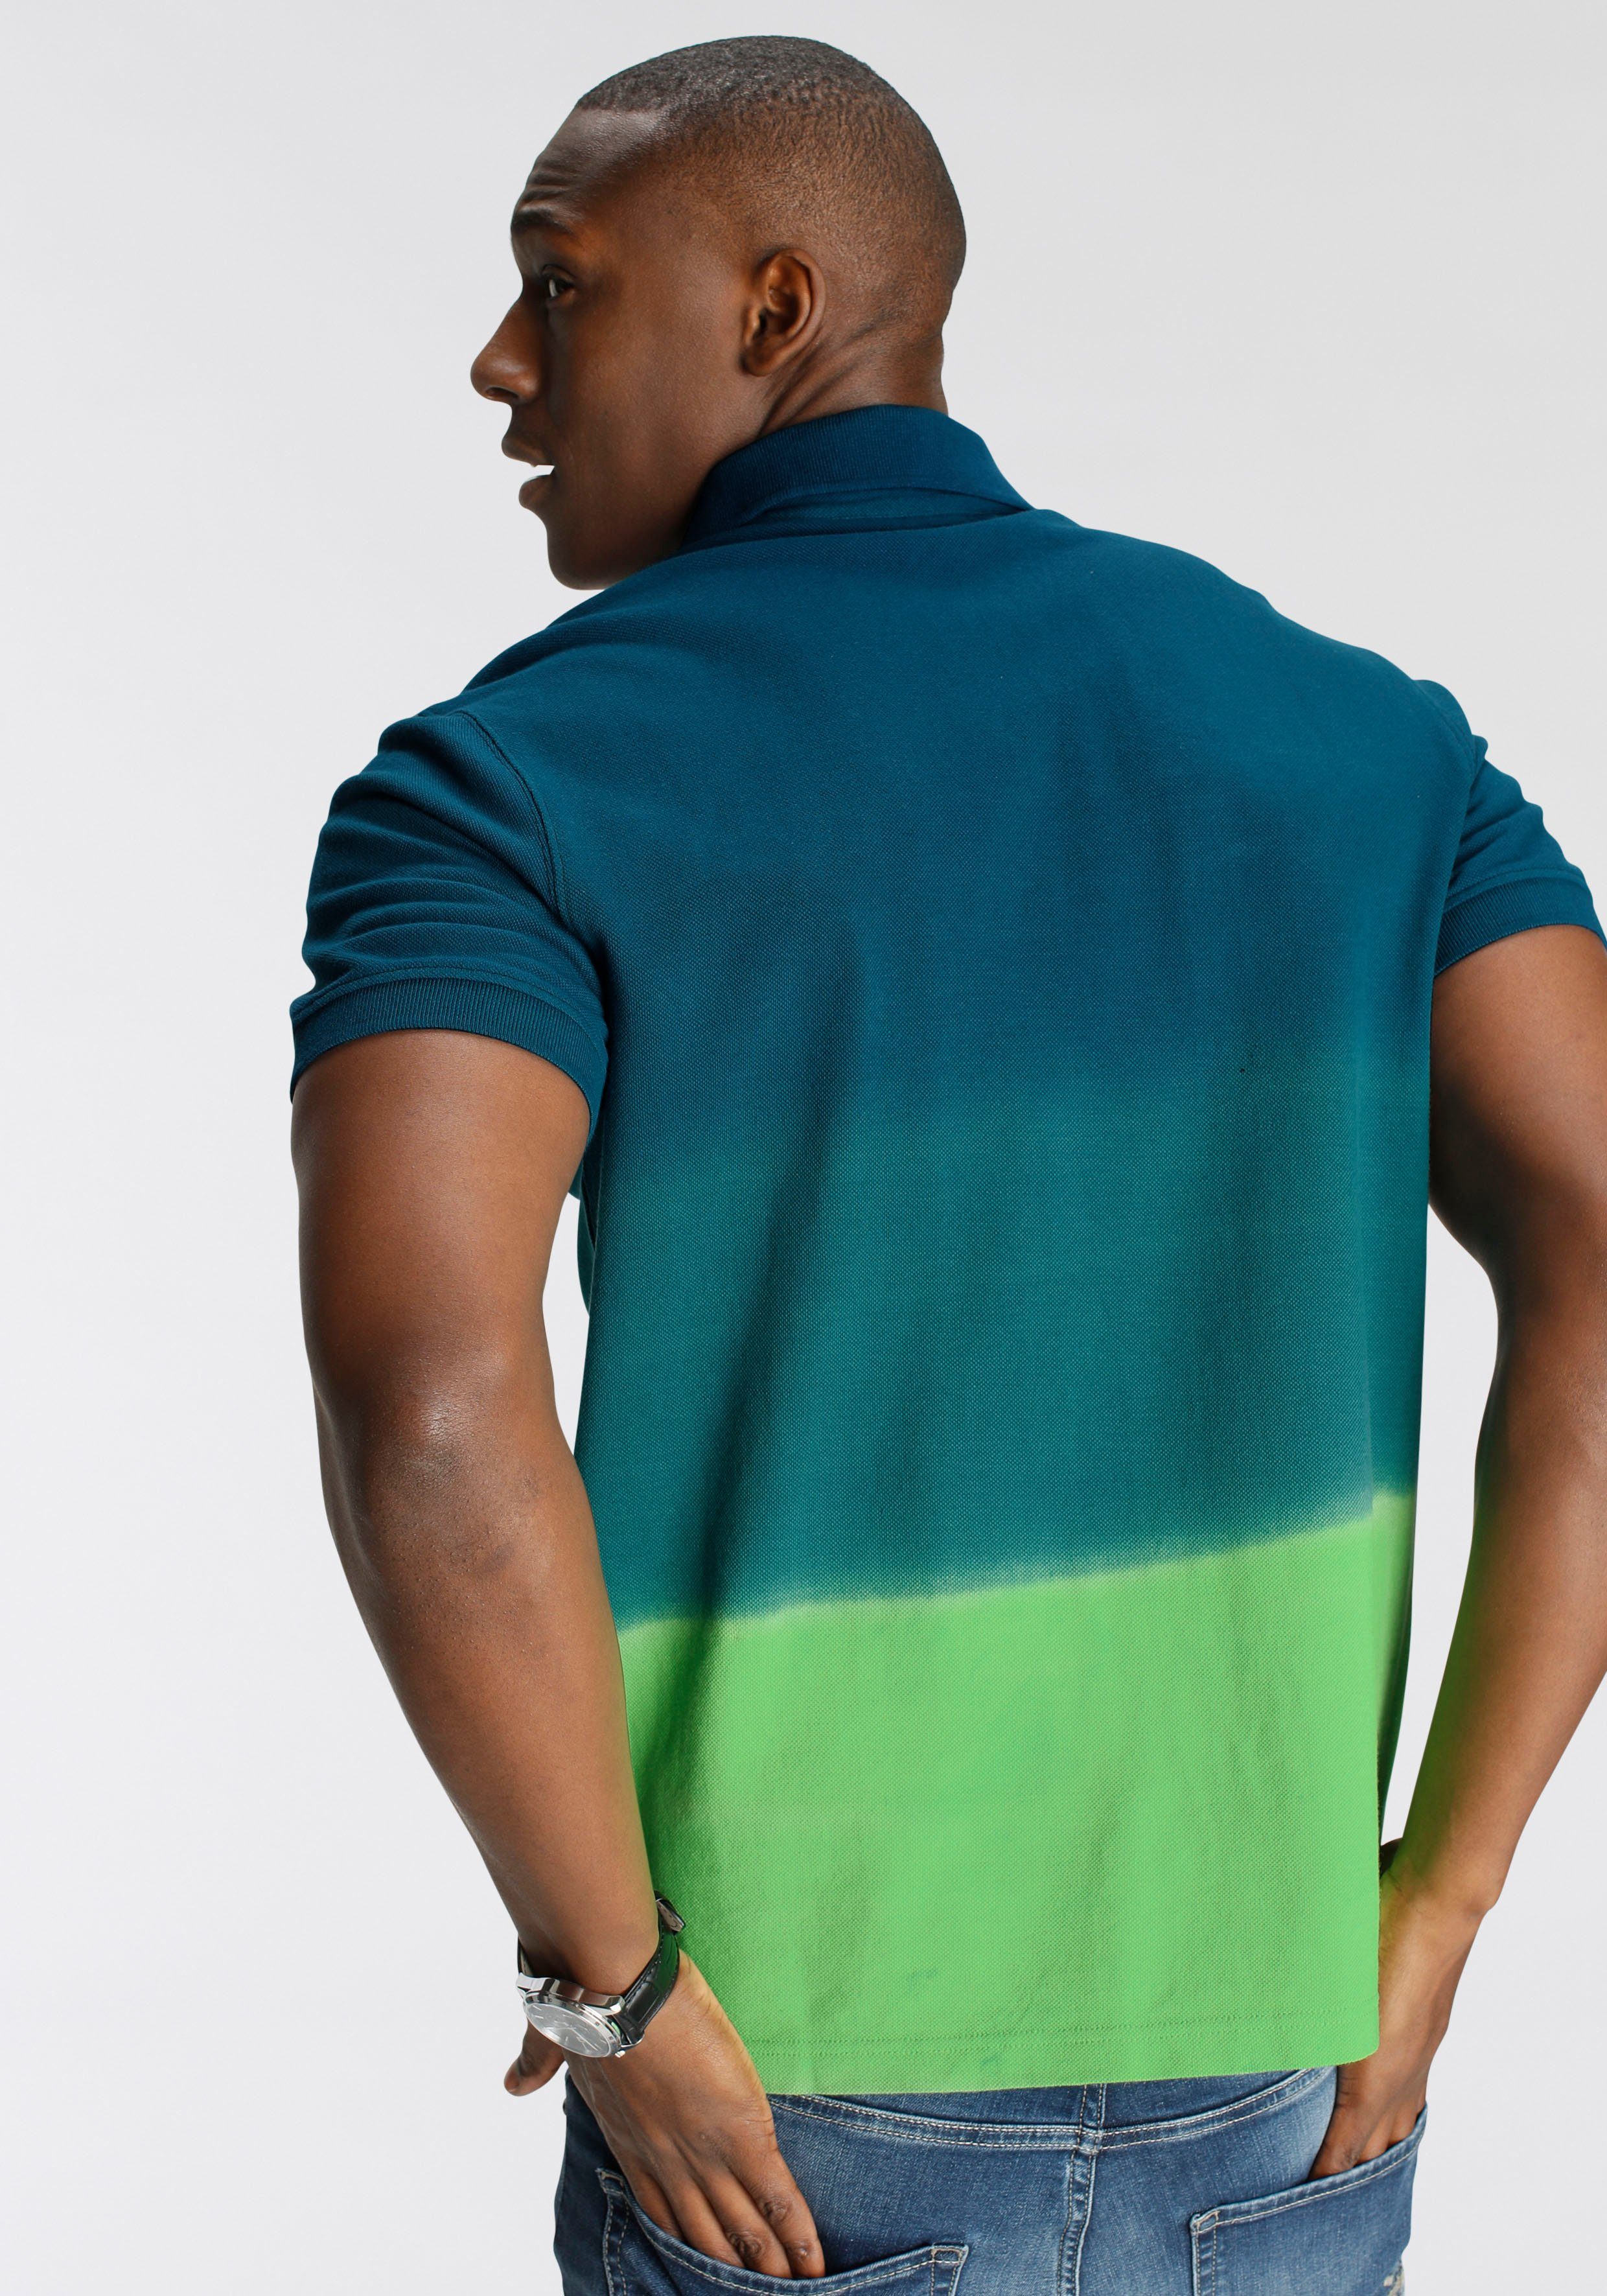 DELMAO Poloshirt Farbverlauf mit und NEUE Print- MARKE! modischem